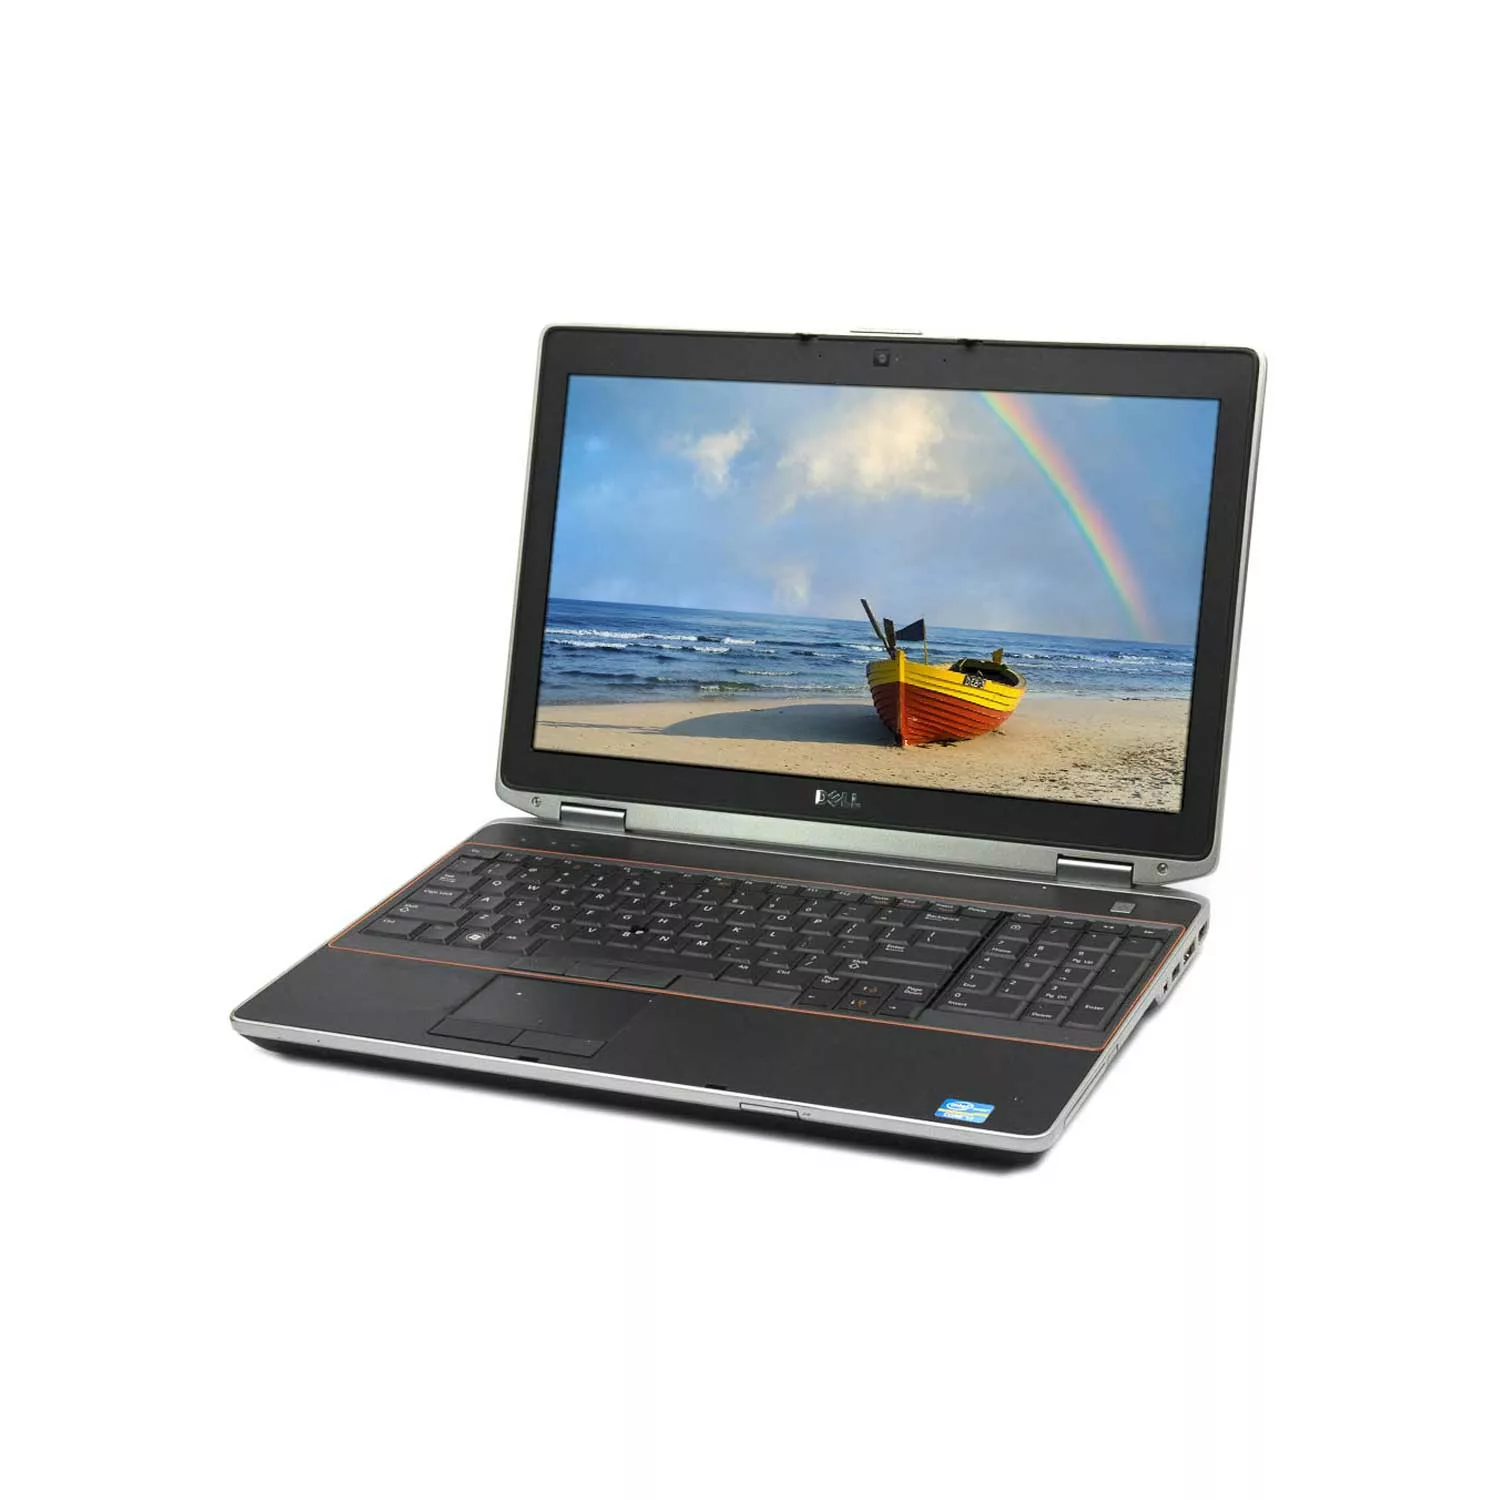 لپ تاپ استوک دل مدل Dell Latitude E6520 15.6inch